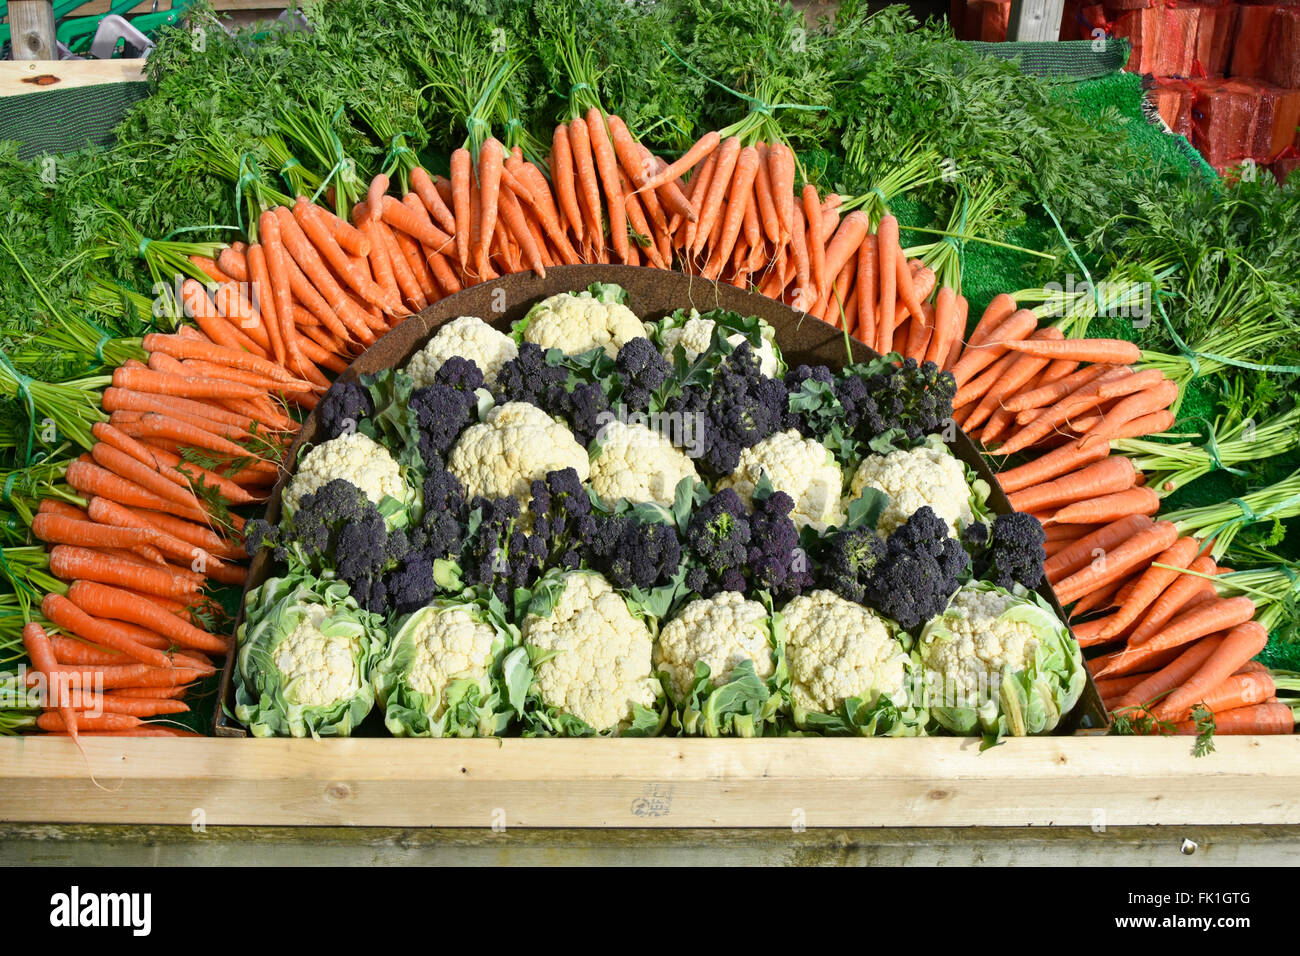 Las zanahorias coliflor, brócoli y organizarse como un día cinco coloridos vegetales display promocional en el carro fuera de la entrada a la tienda granja Essex, Inglaterra Foto de stock